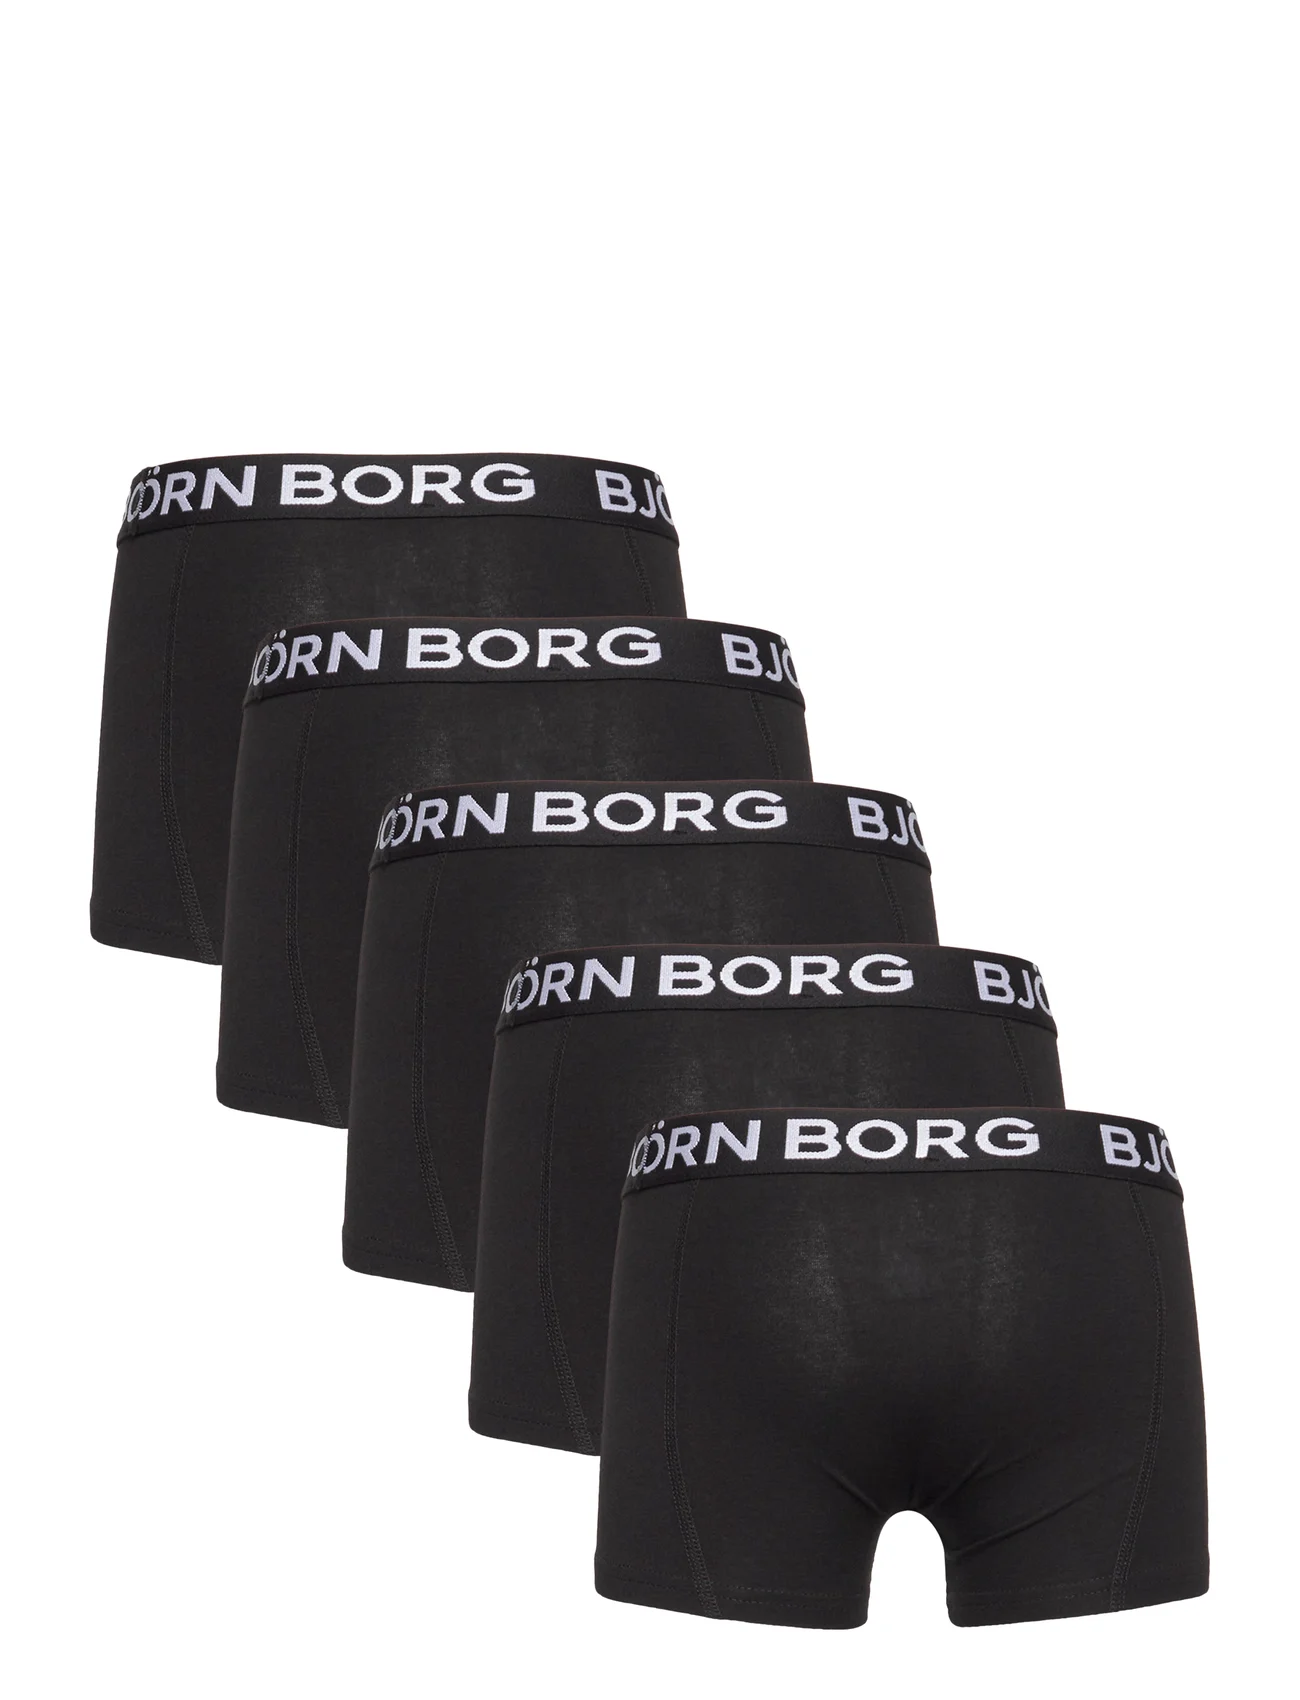 Björn Borg - CORE BOXER 5p - onderbroeken - multipack 2 - 1